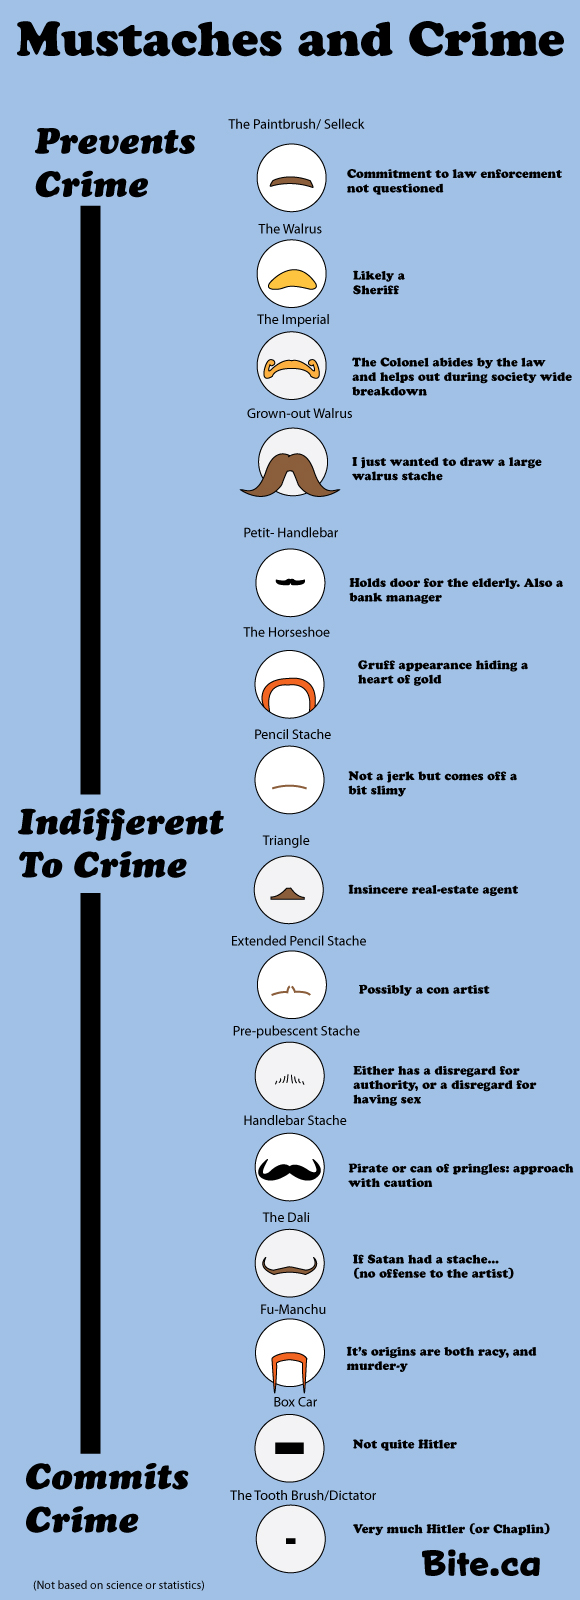 Los bigotes y el crimen, conoce si eres bueno o un criminal de acuerdo a tu bigote #Humor 1